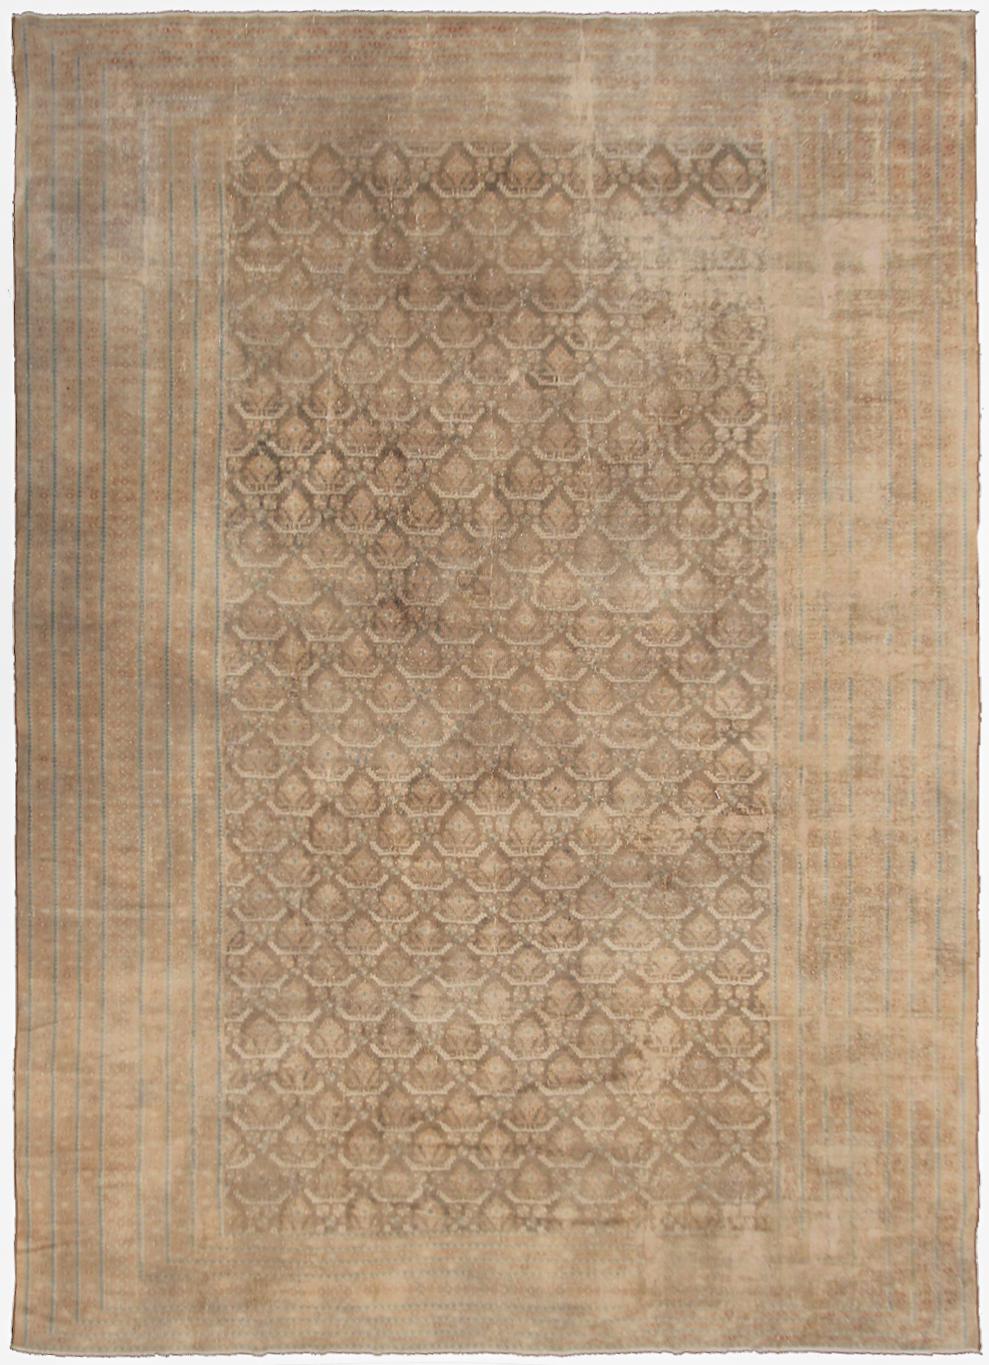 Seltener antiker persischer Malayerteppich beige all over geometrisch insgesamt Ton in Ton außergewöhnlich fein 9x12 1920




